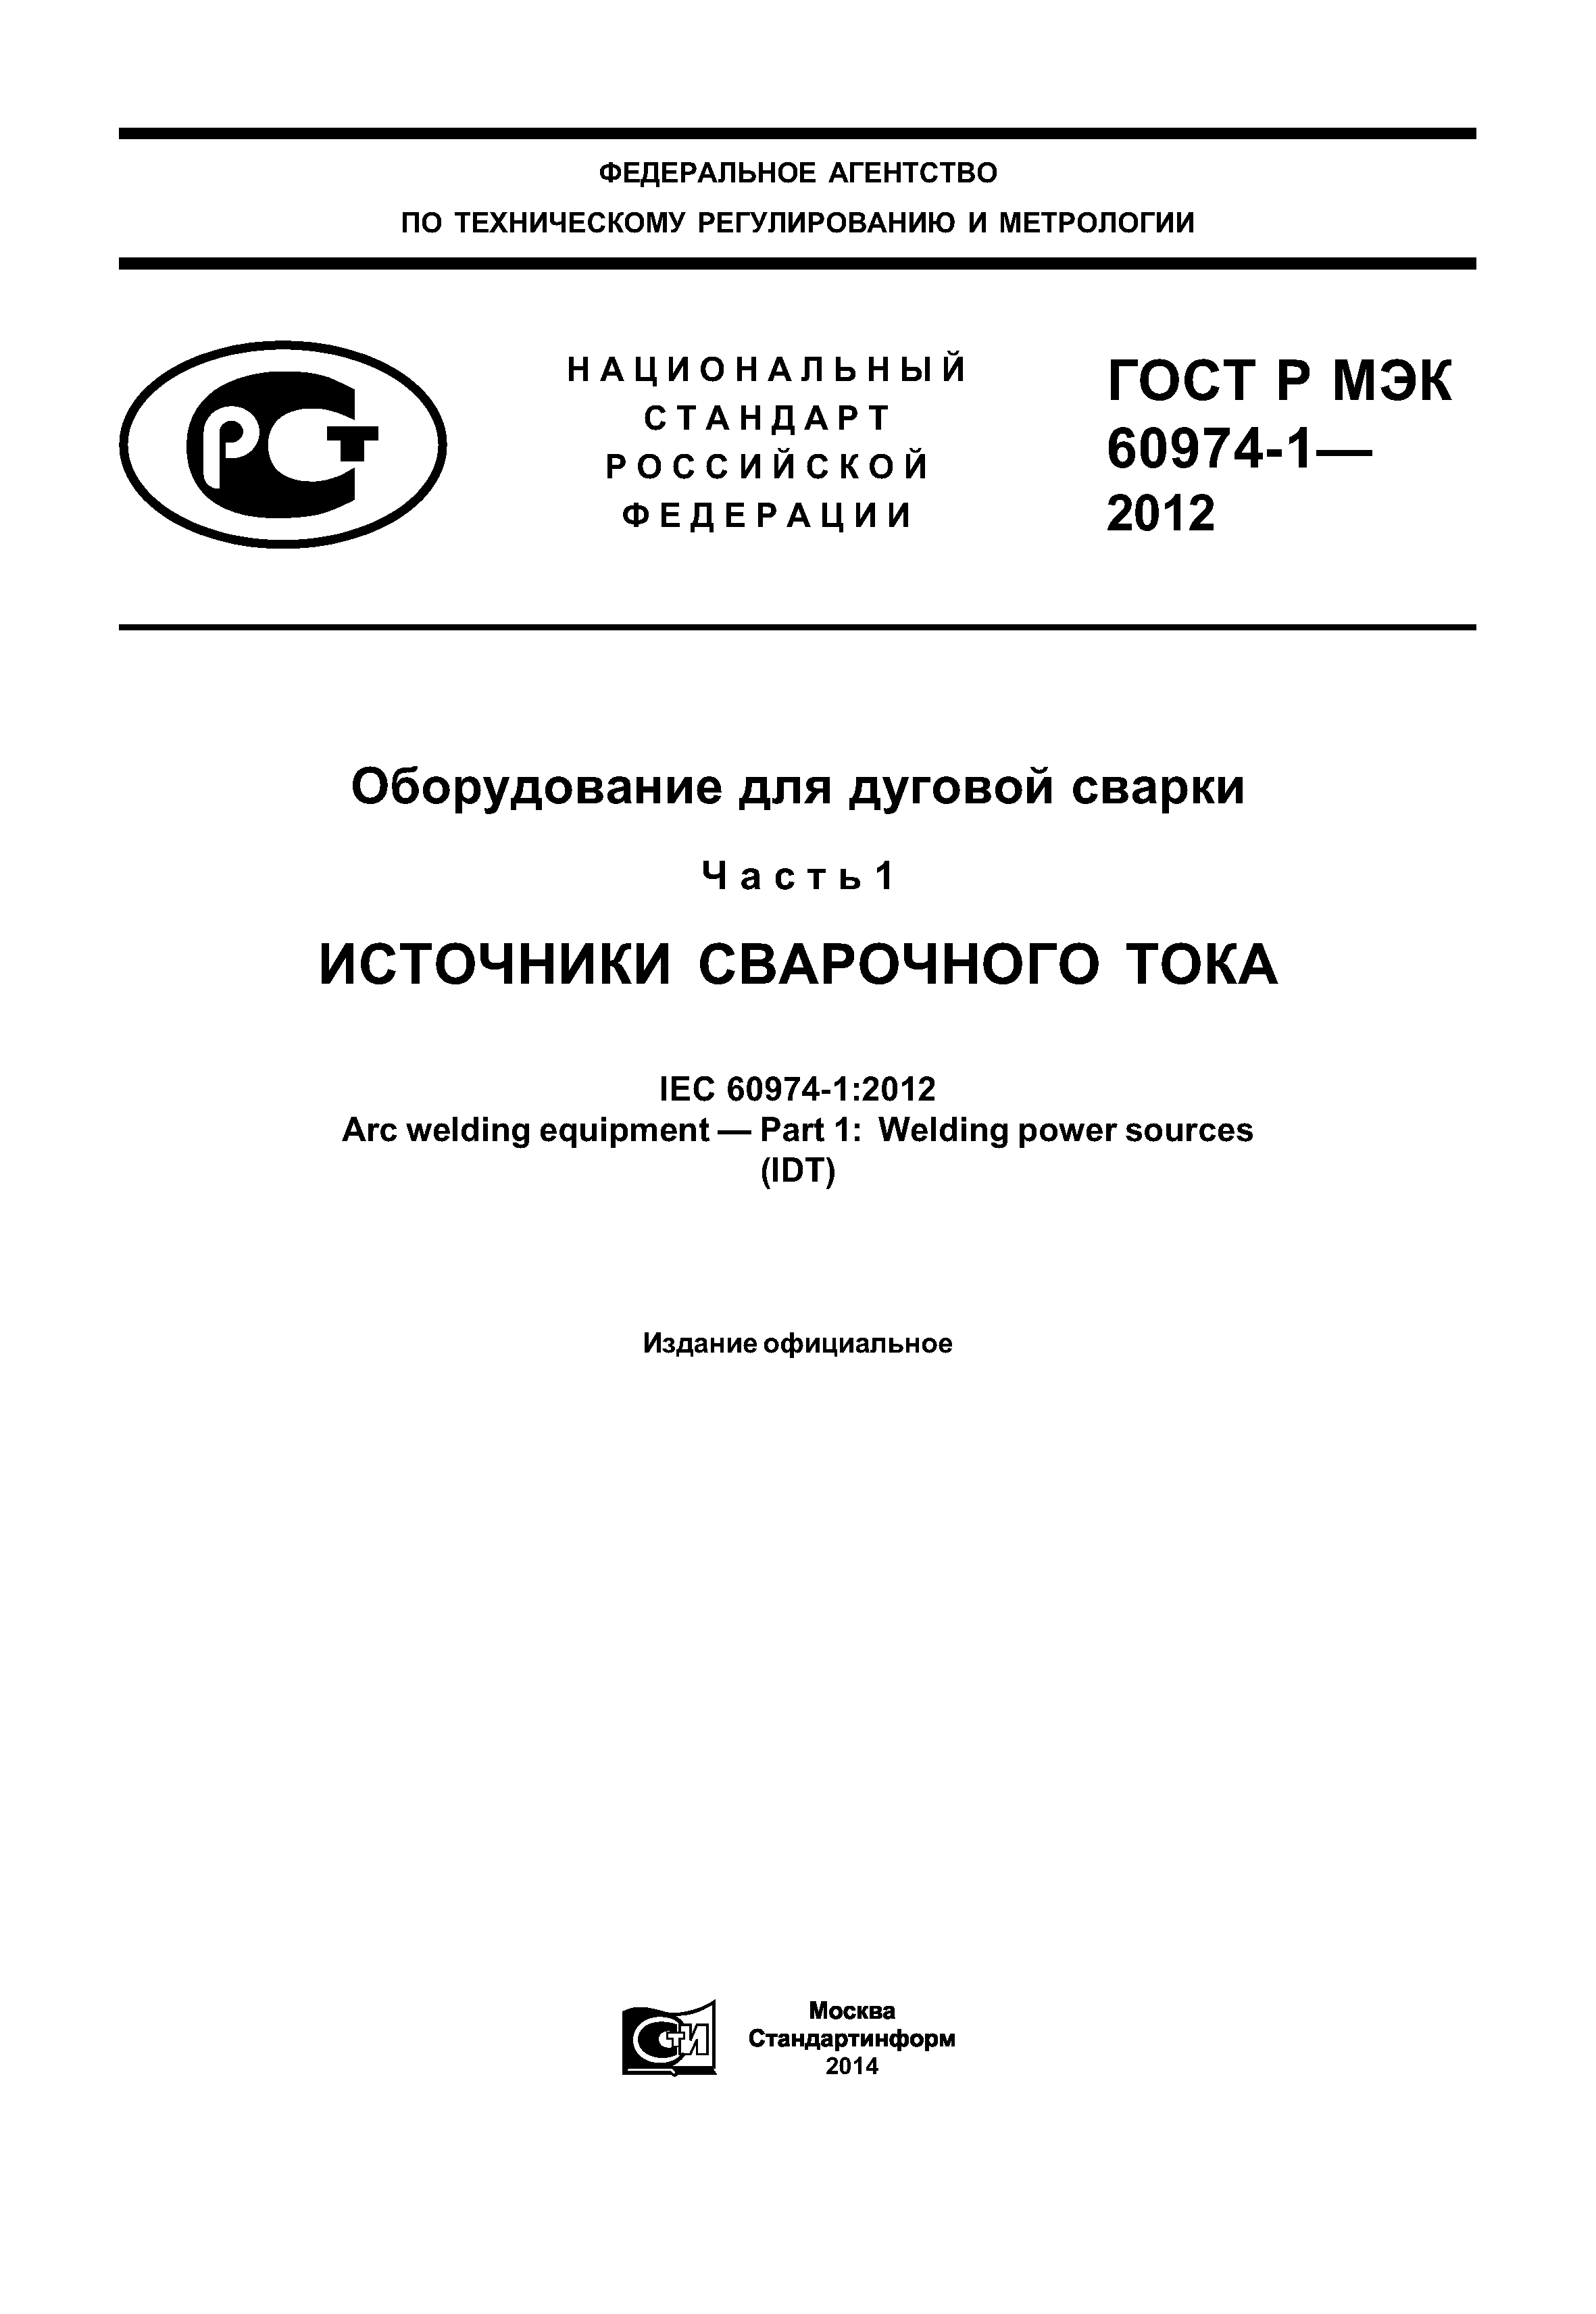 ГОСТ Р МЭК 60974-1-2012